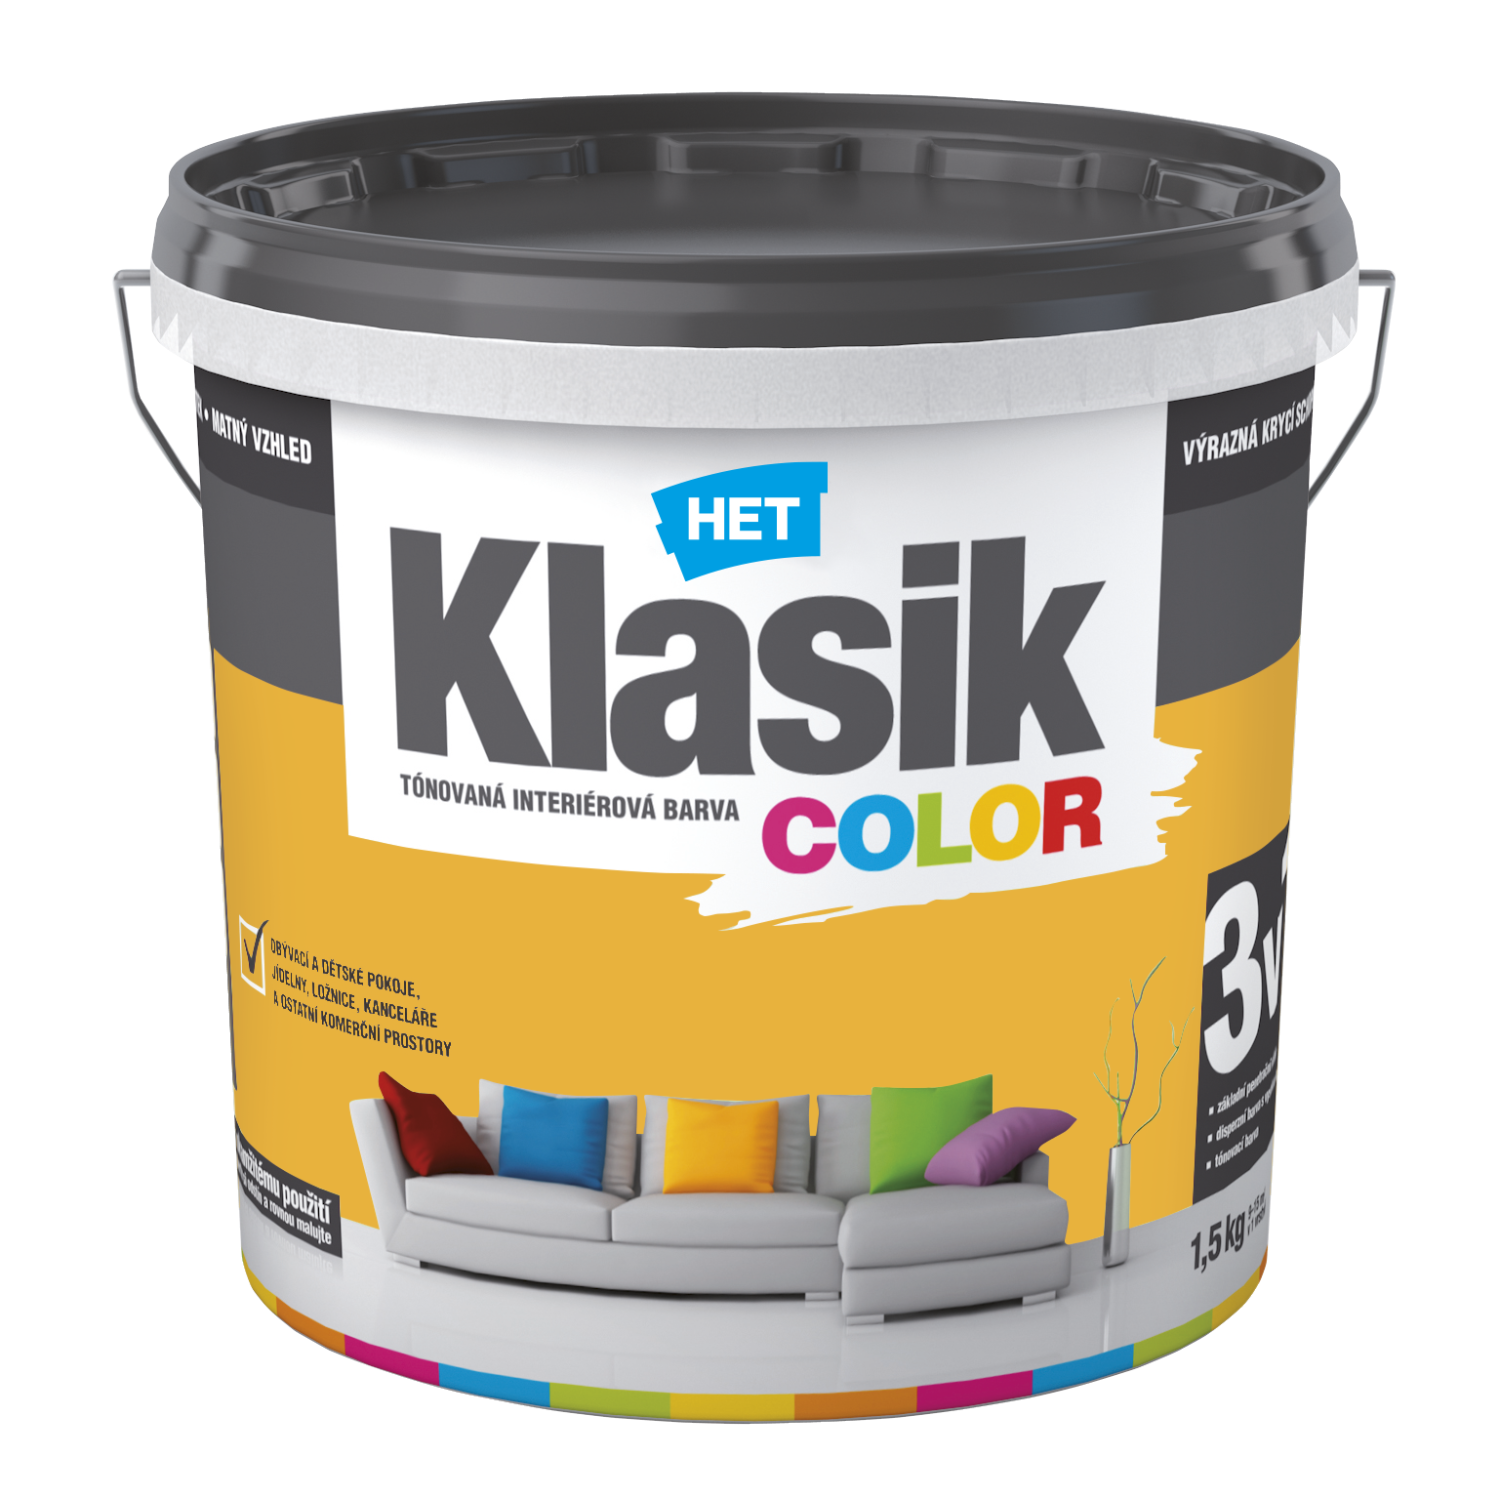 HET Klasik COLOR tónovaná interiérová akrylátová disperzná oteruvzdorná farba 1,5 kg, KC0628 - žltý púpavový